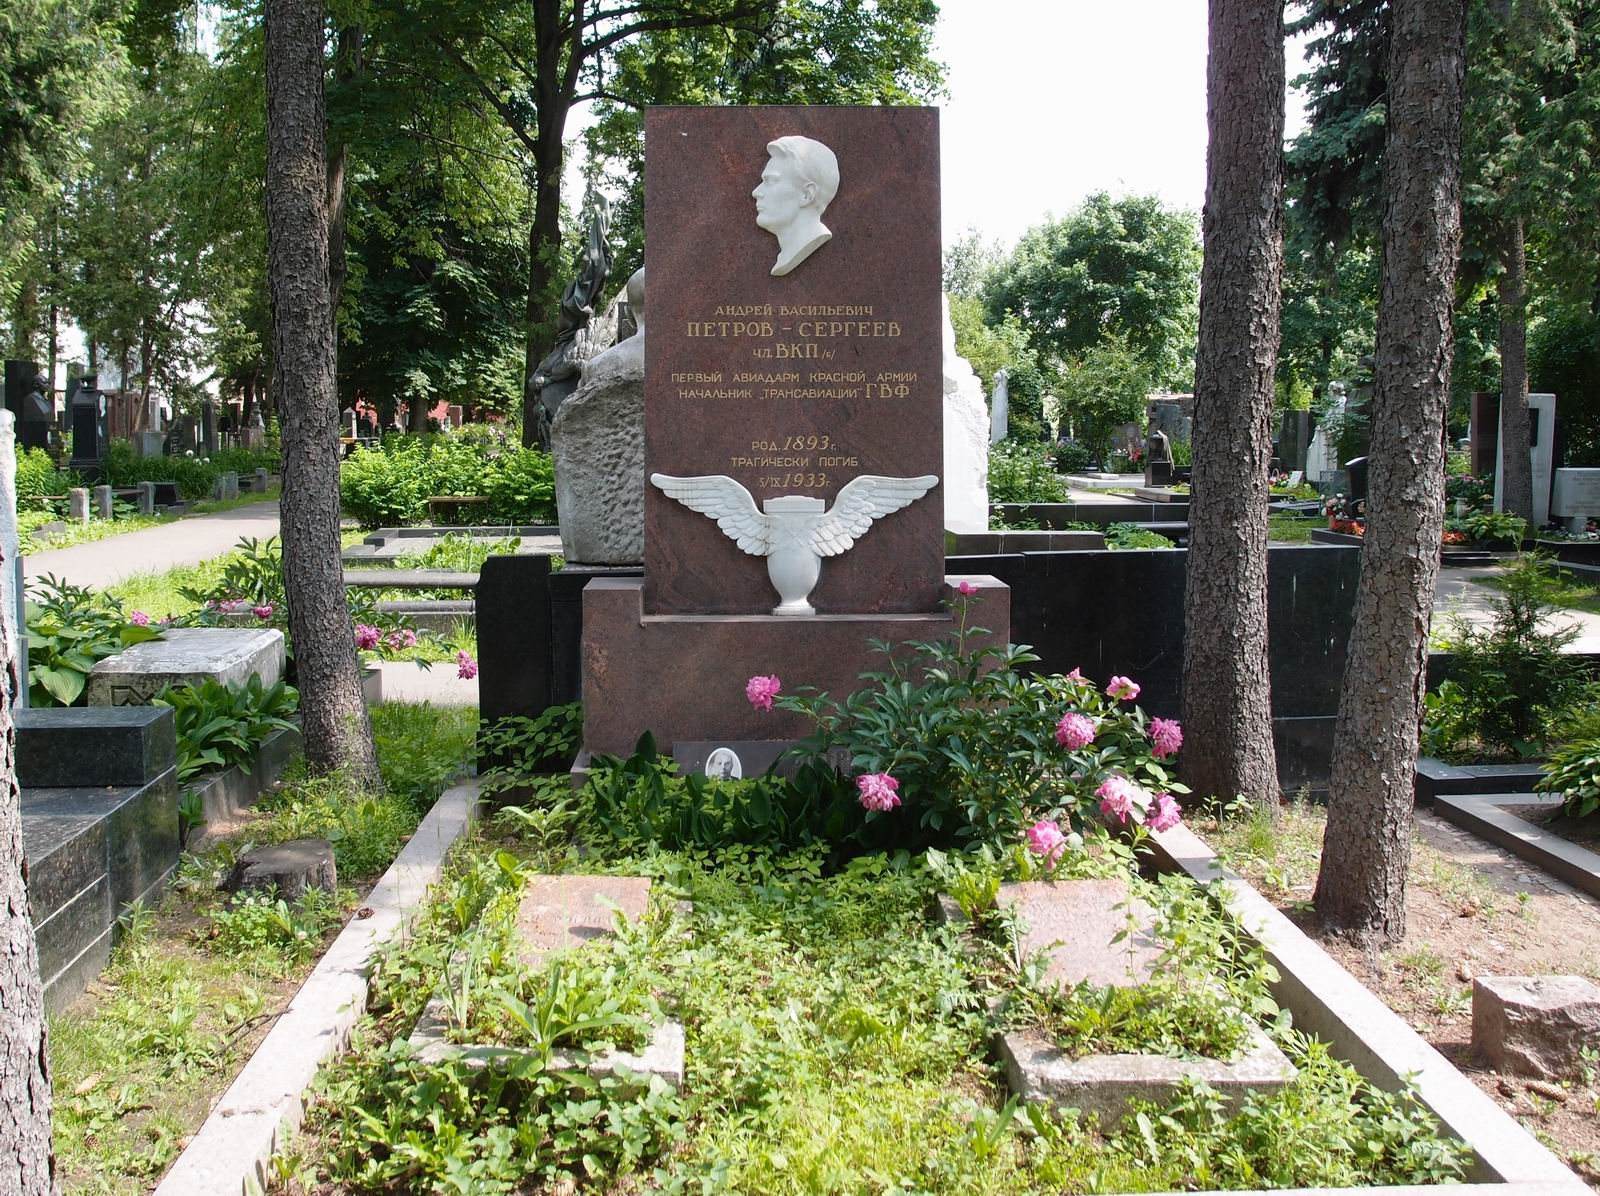 Памятник на могиле Петрова-Сергеева А.В. (1893-1933), ск. В. и О. Домогацкие, на Новодевичьем кладбище (1-11-13).